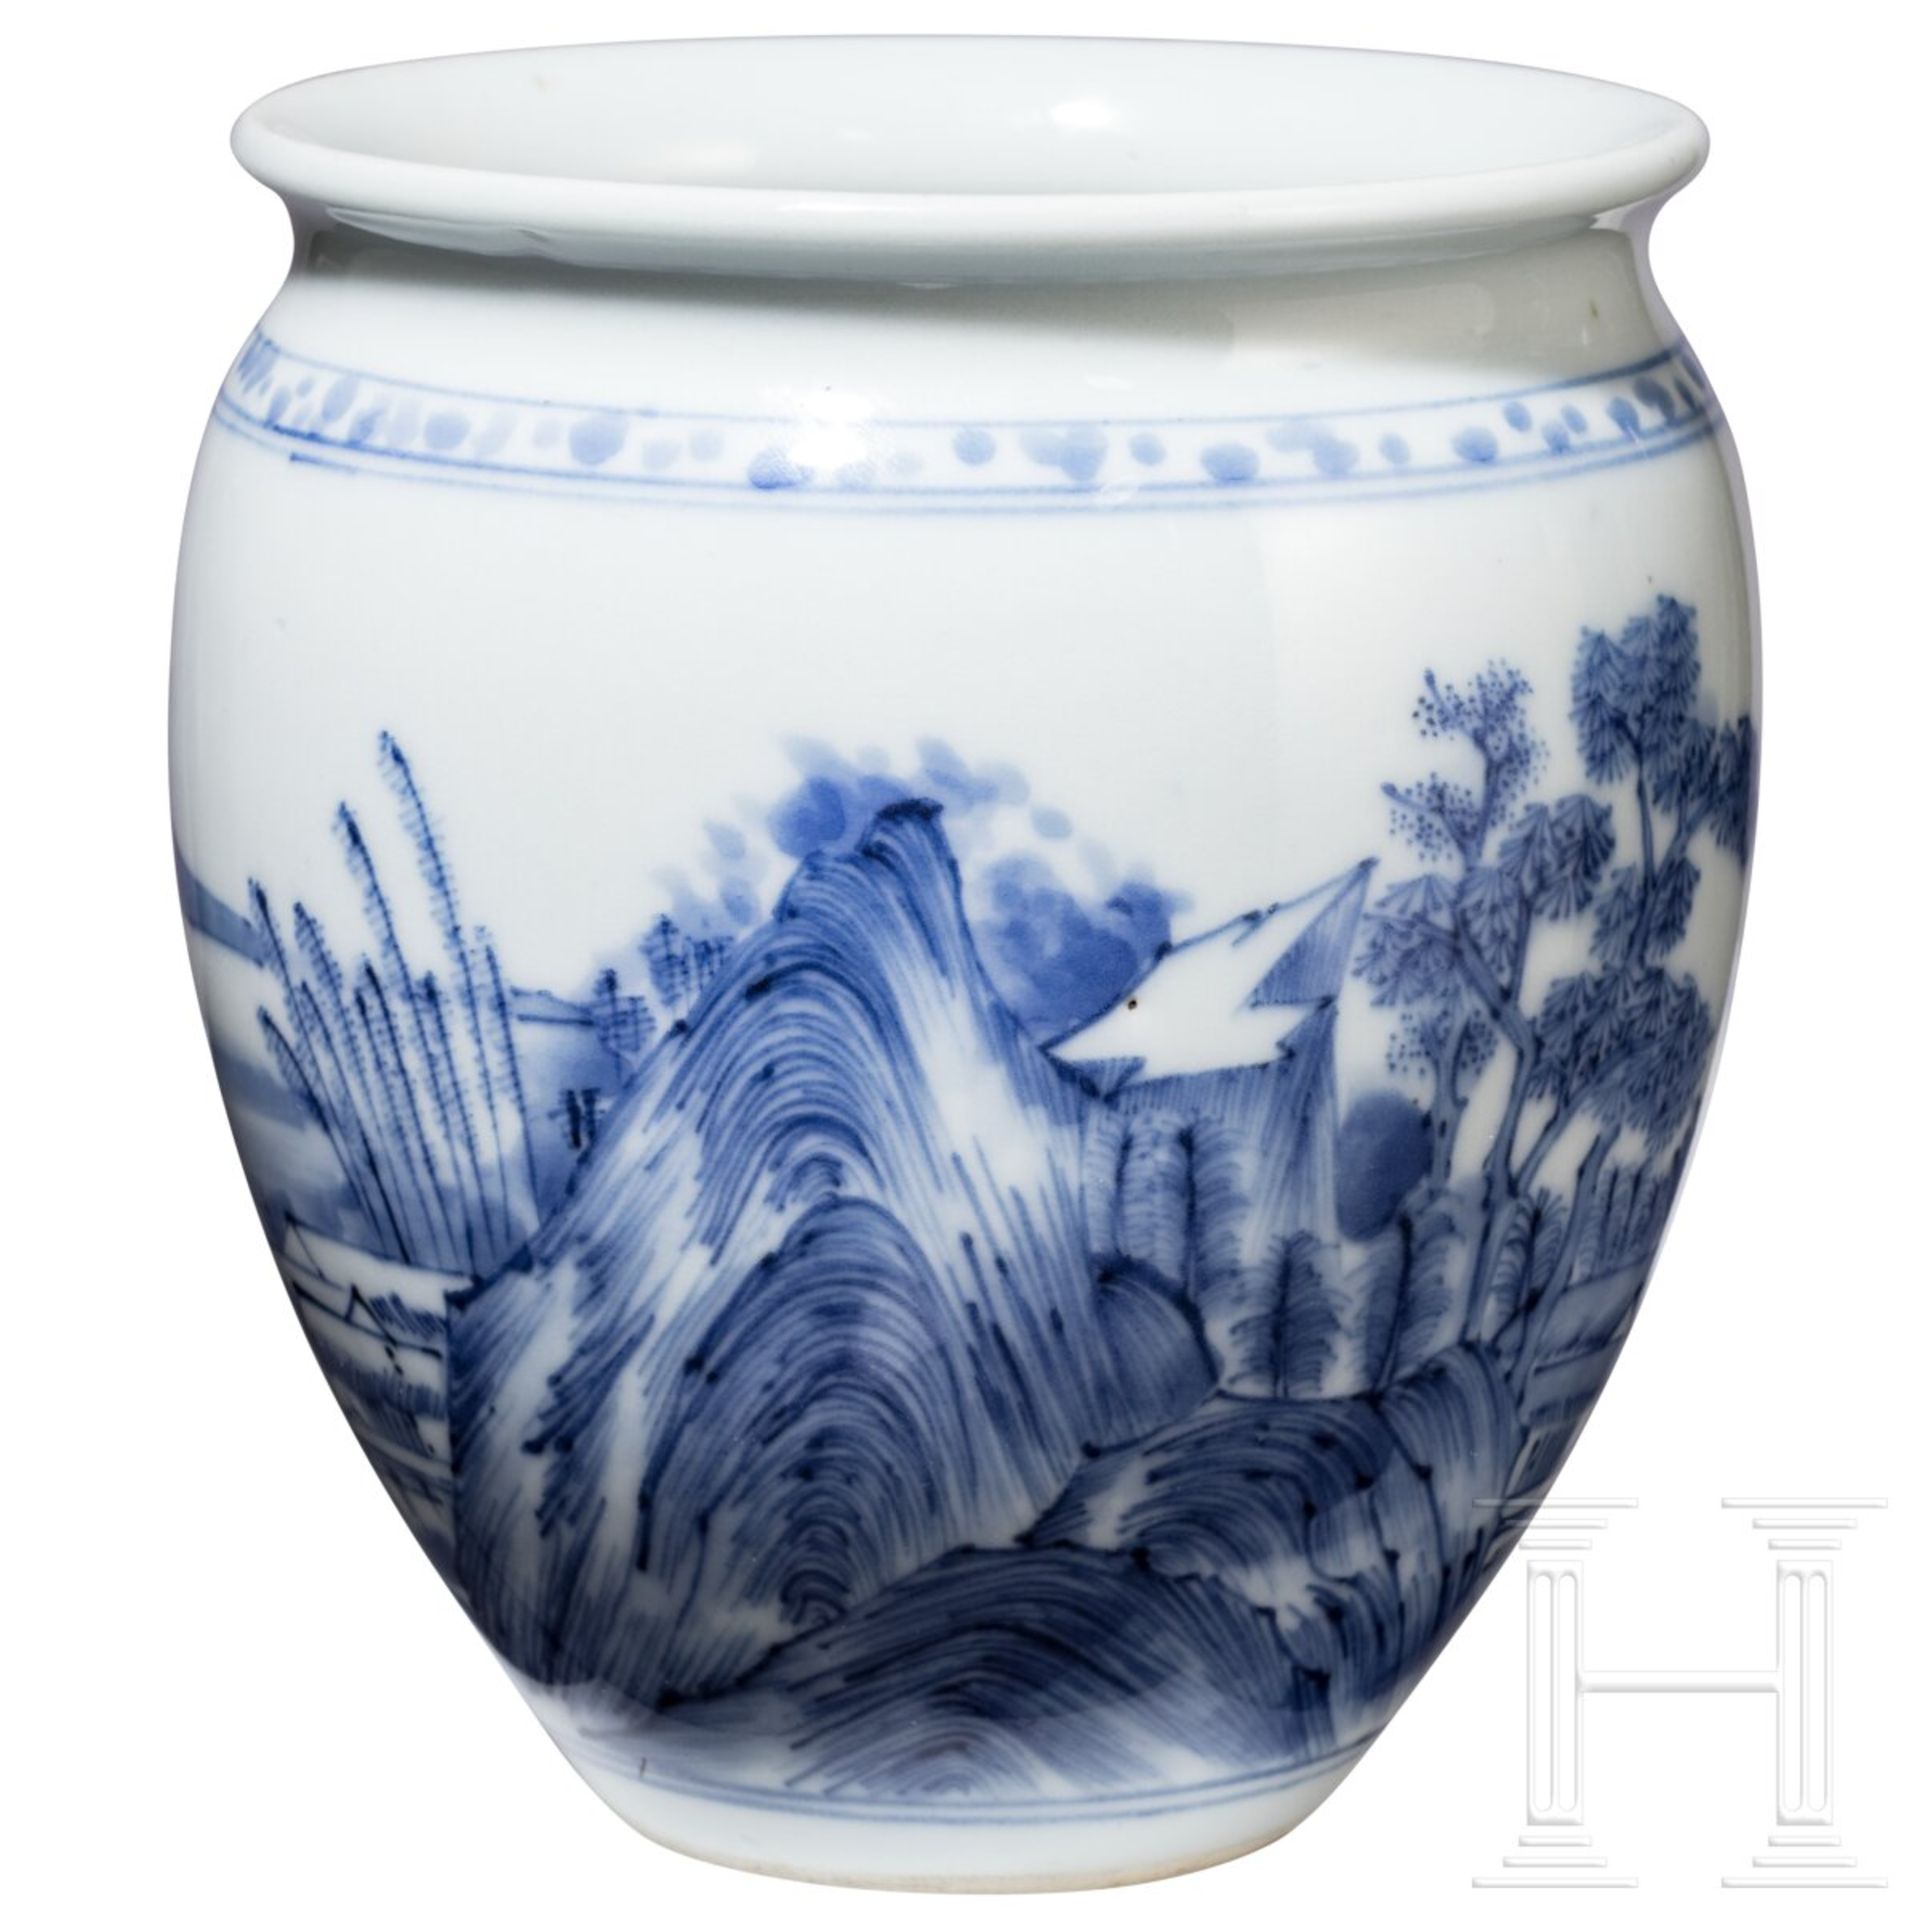 Blau-weiße Vase mit Seenlandschaft, China, wohl Kangxi-Periode (18. Jhdt.) - Bild 2 aus 15